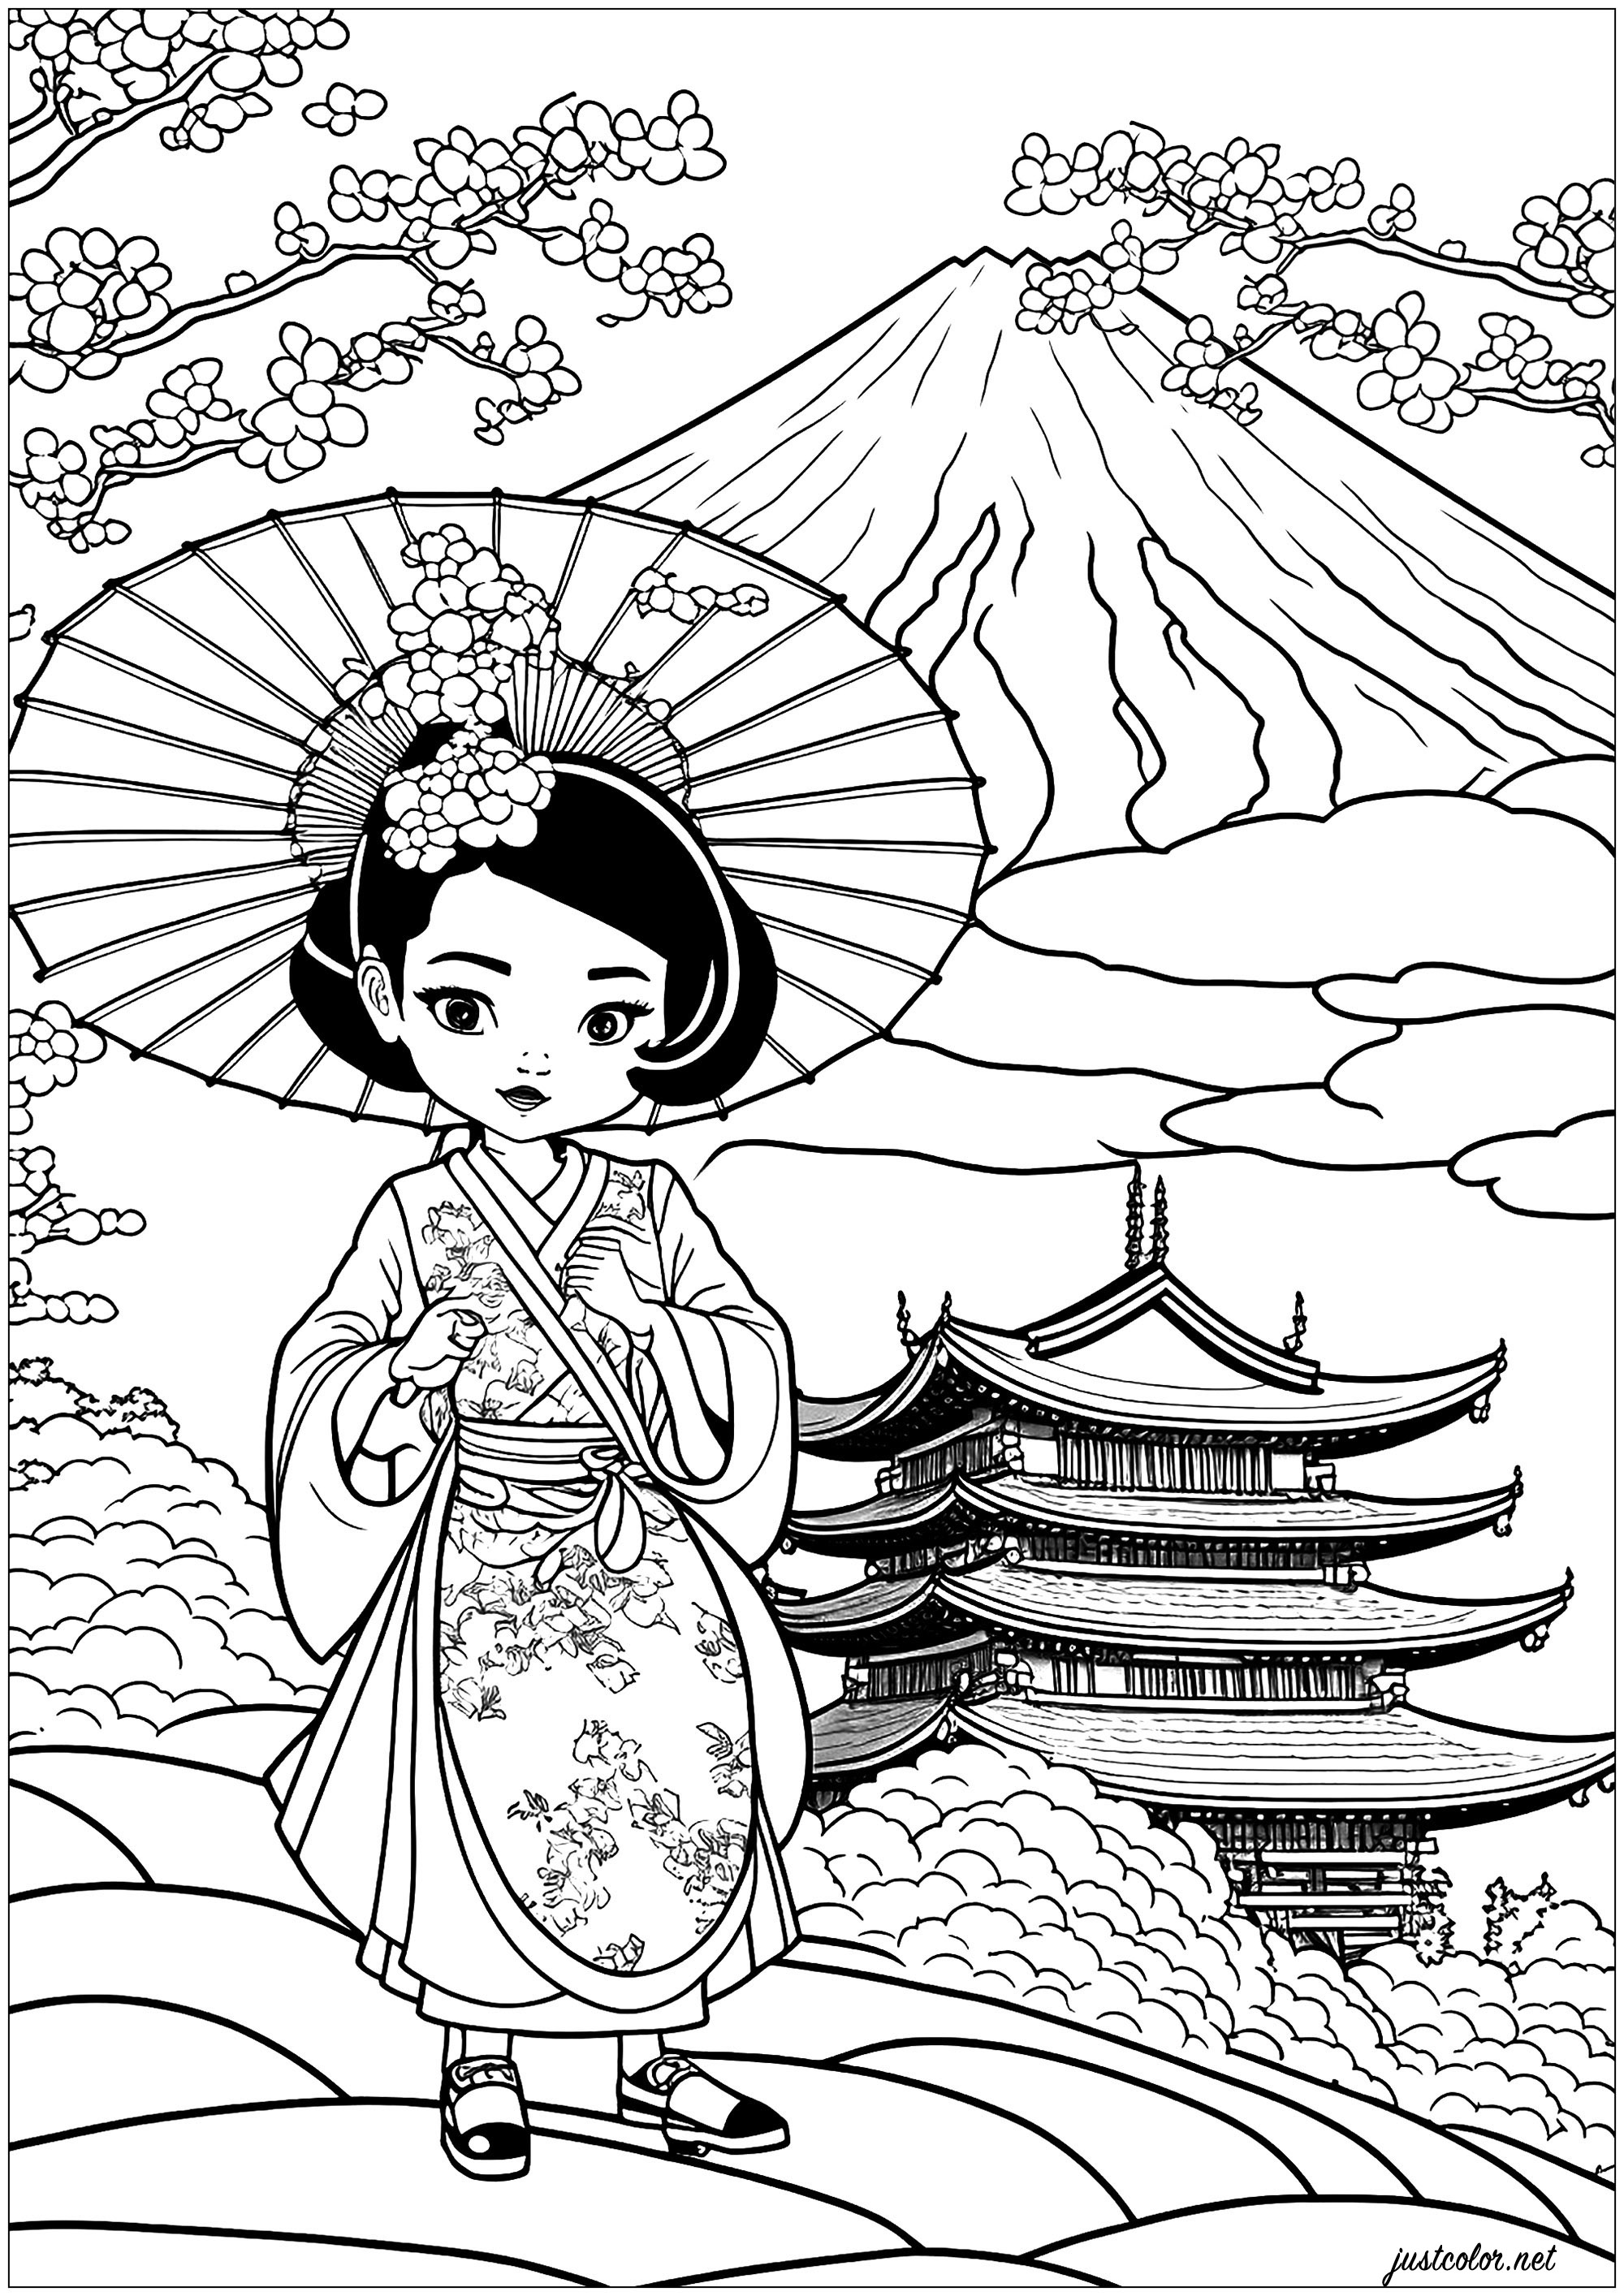 Coloriage dessin animé Geisha . Un coloriage complexe avec une belle Geisha dans son magnifique kimono, et un magnifique paysage japonais.